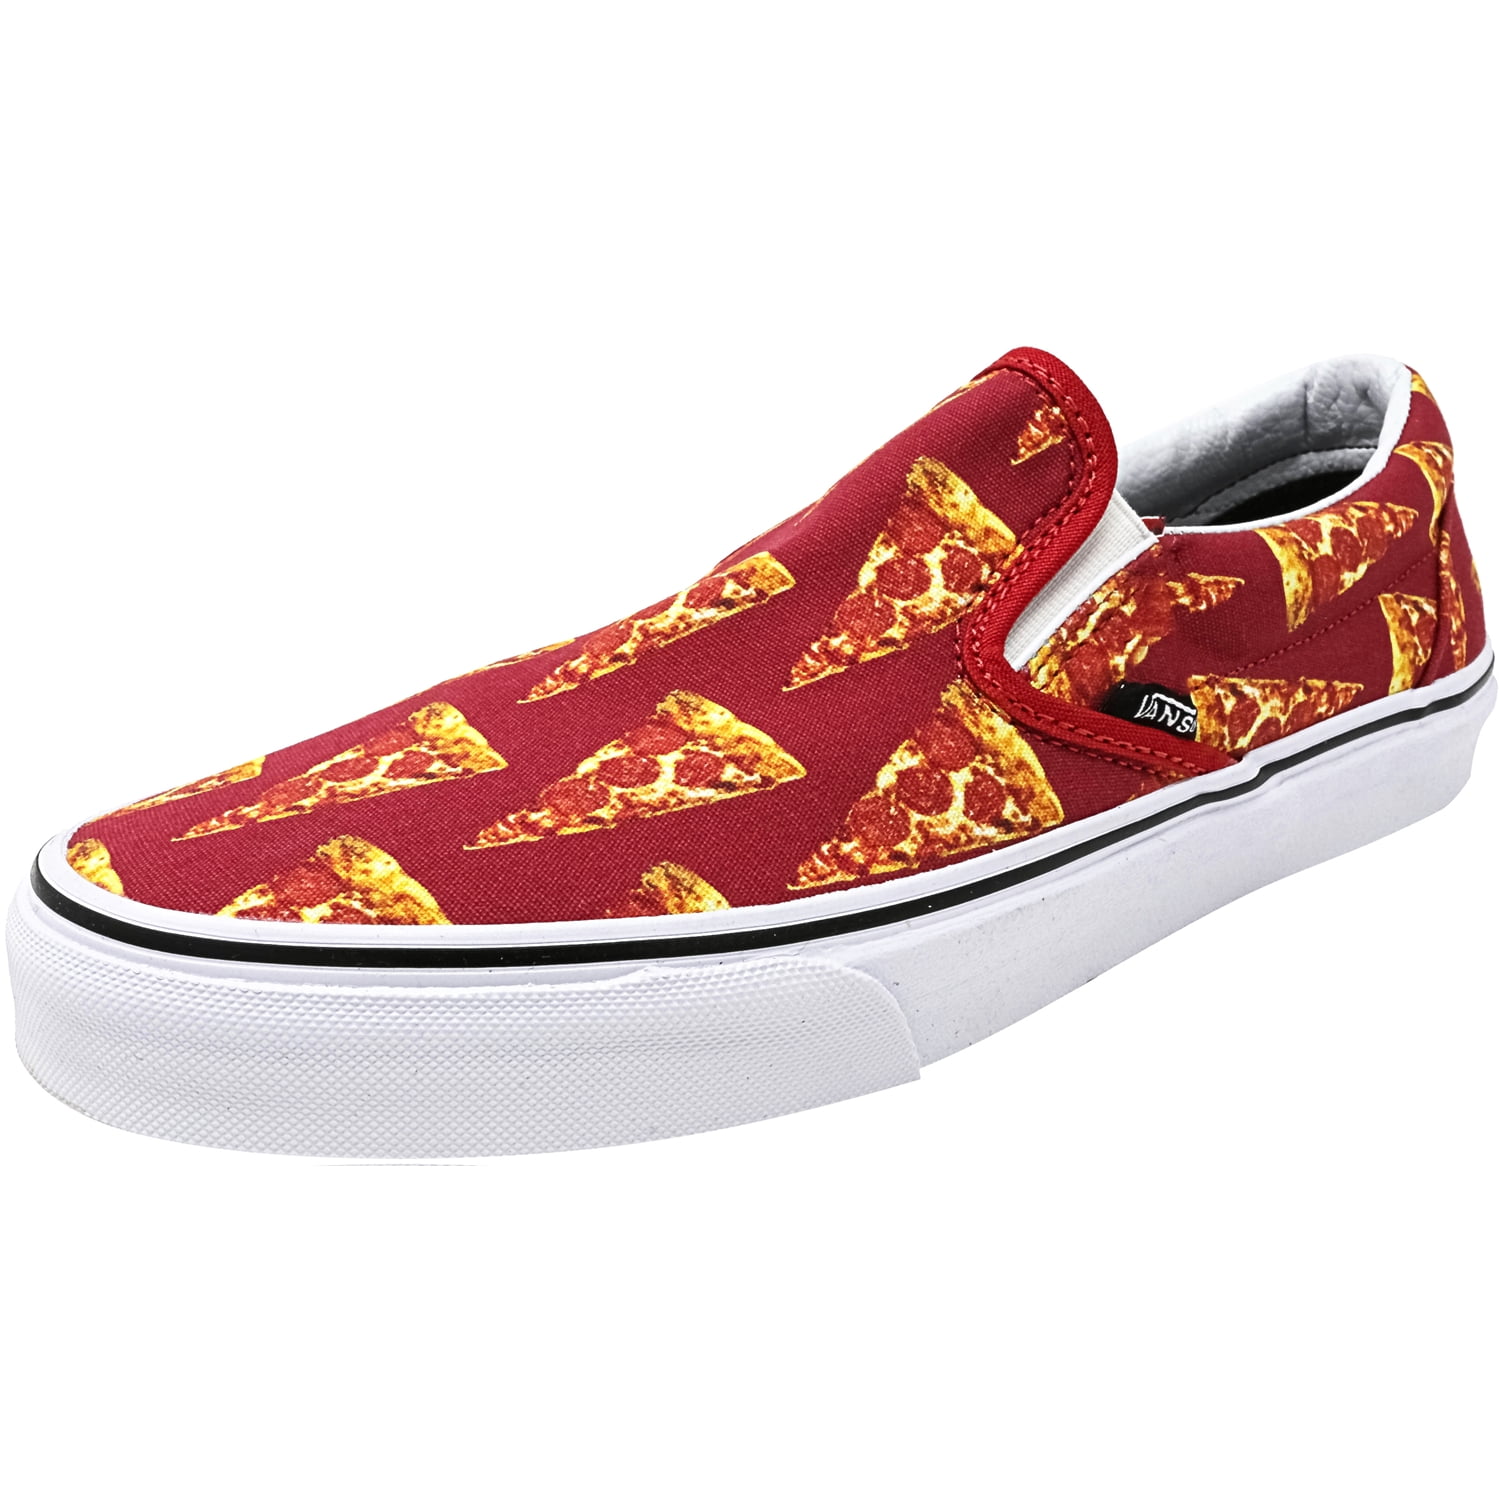 vans pizza shoes